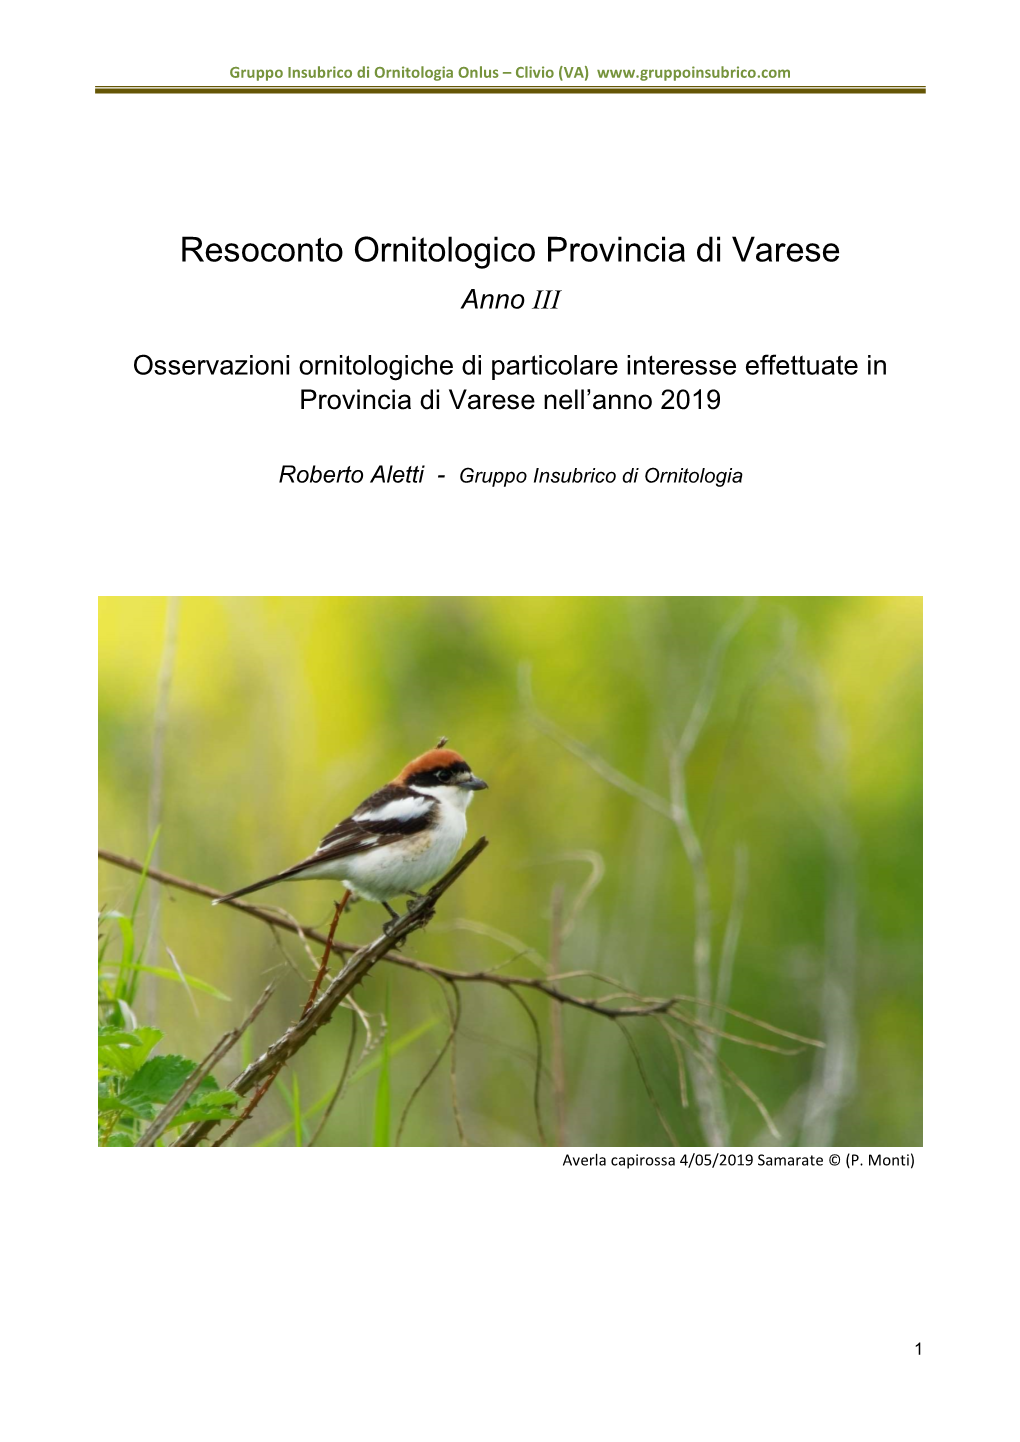 Resoconto Ornitologico Provincia Di Varese Anno III